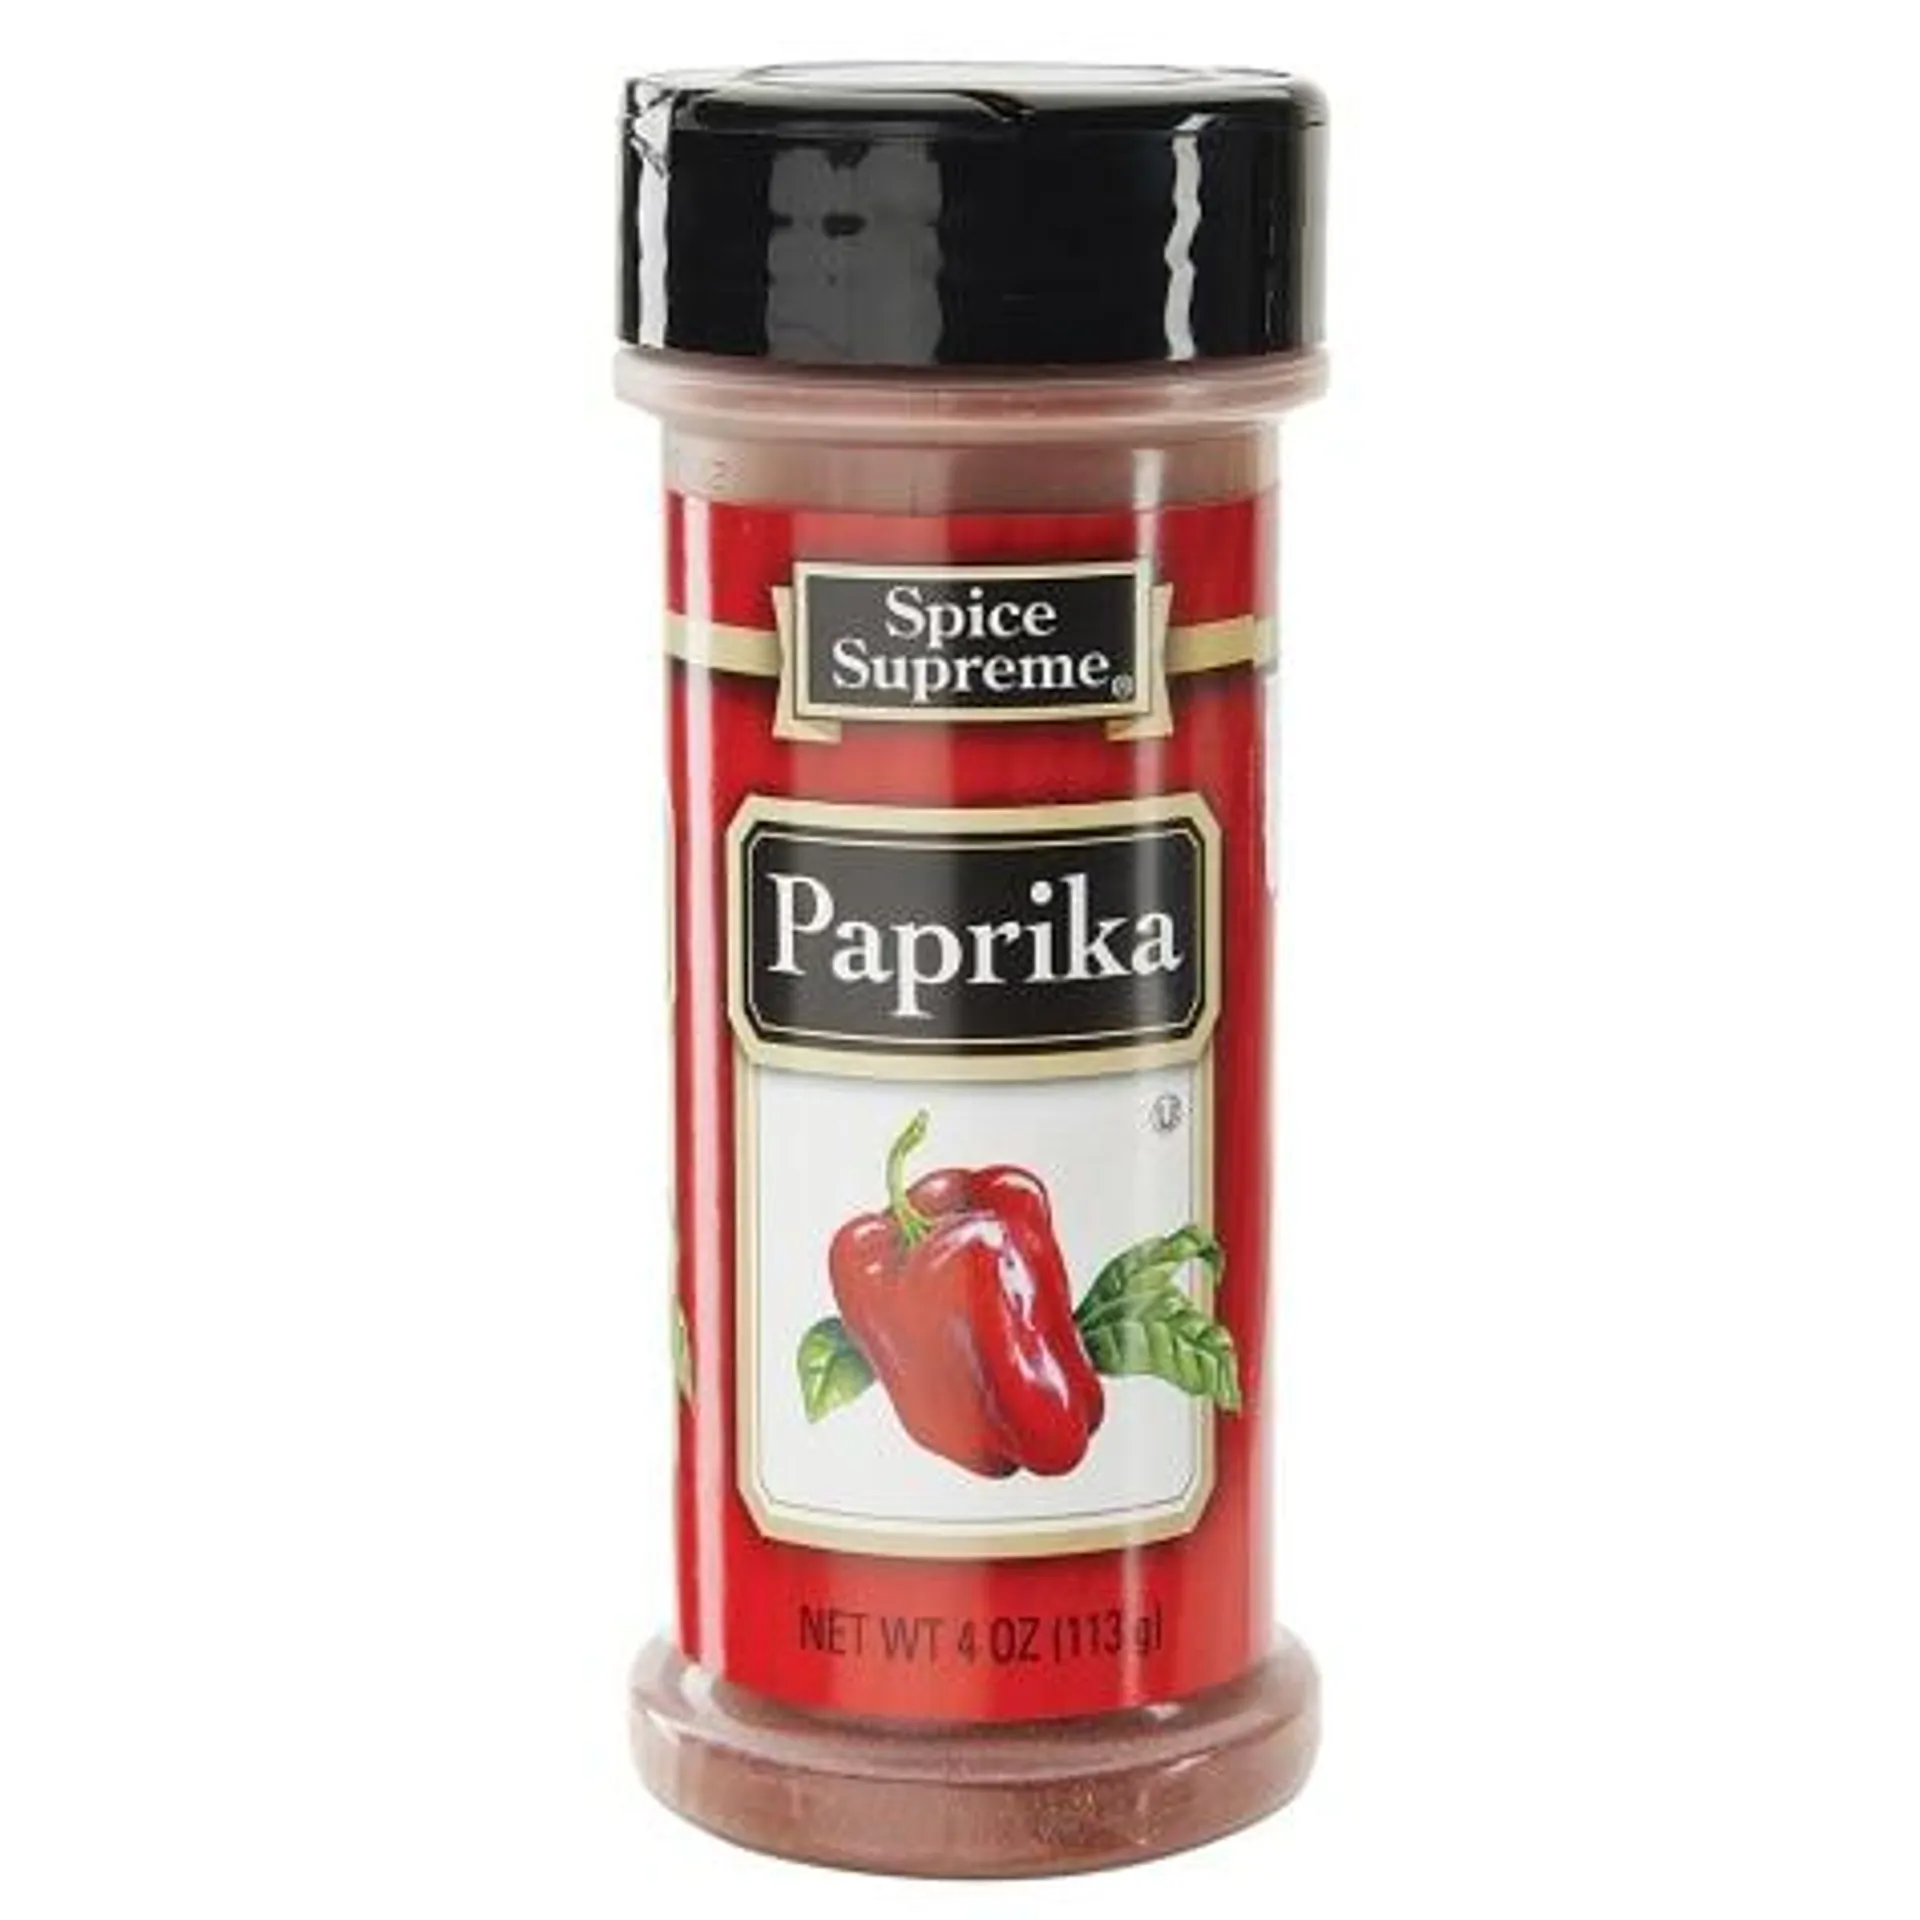 Spice Supreme Paprika, 4 oz